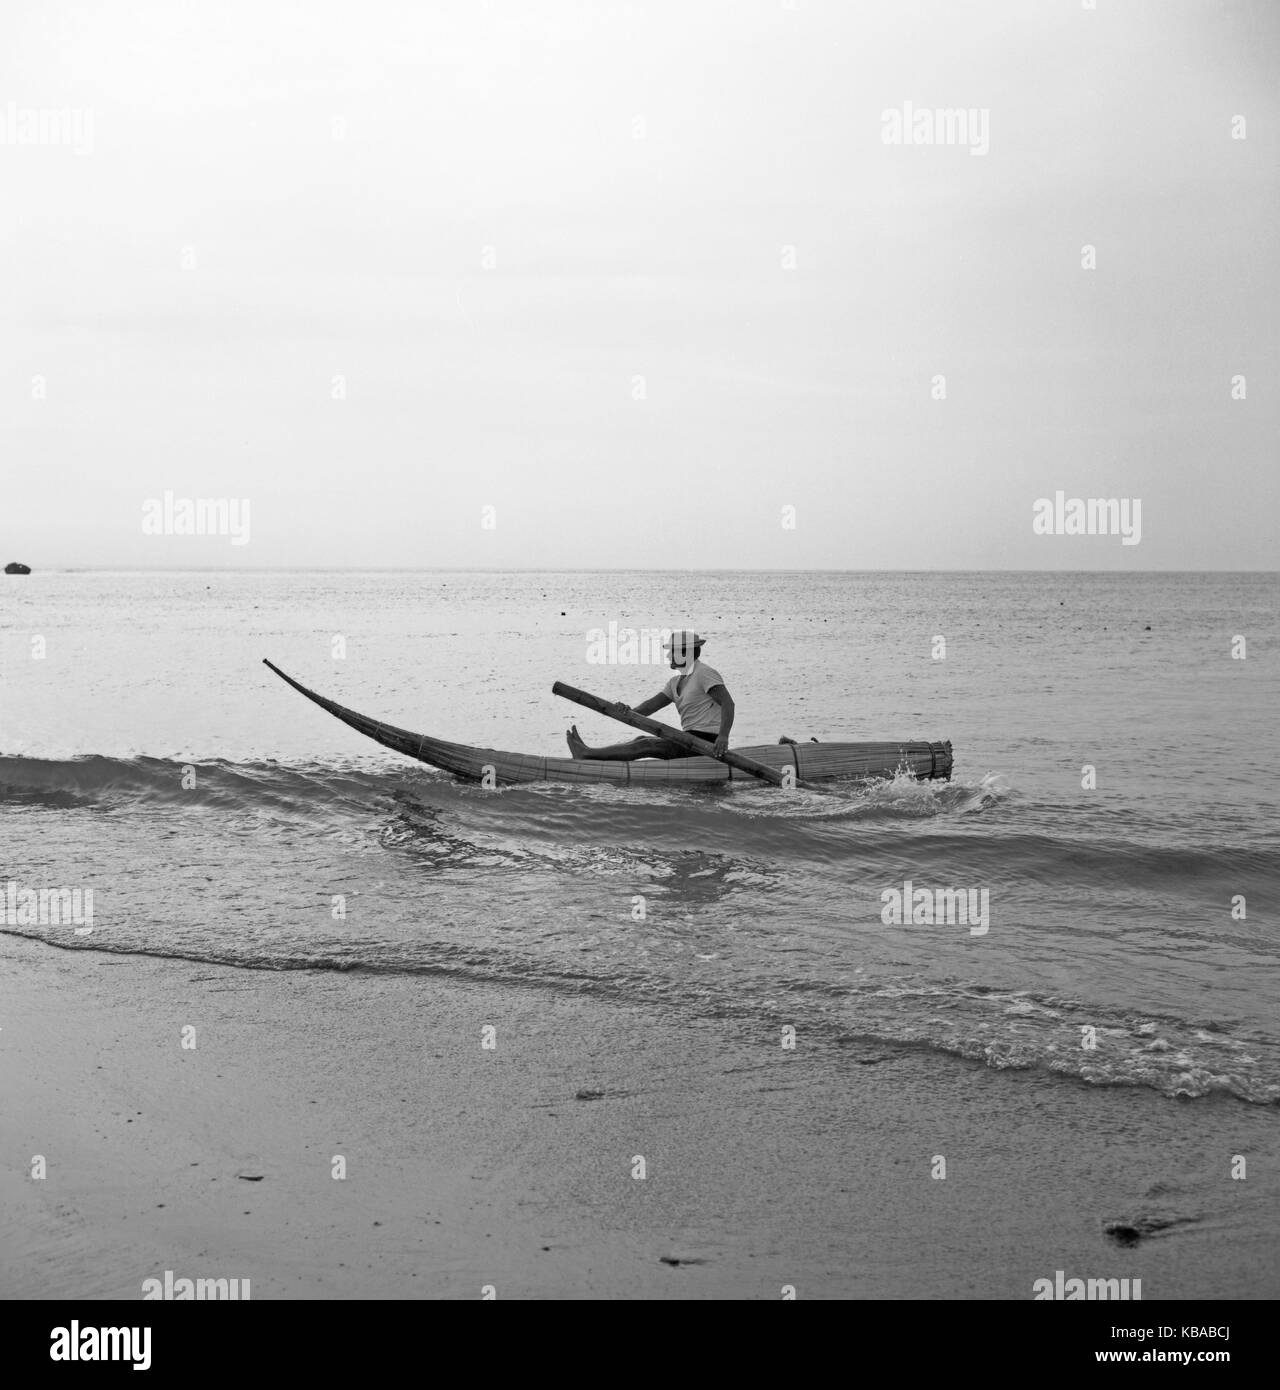 Boote aus Stroh an der Pazifikküste von Trujillo, Peru 1960er Jahre. Straw boats at the Pacific coast of Trujillo, Peru 1960s. Stock Photo